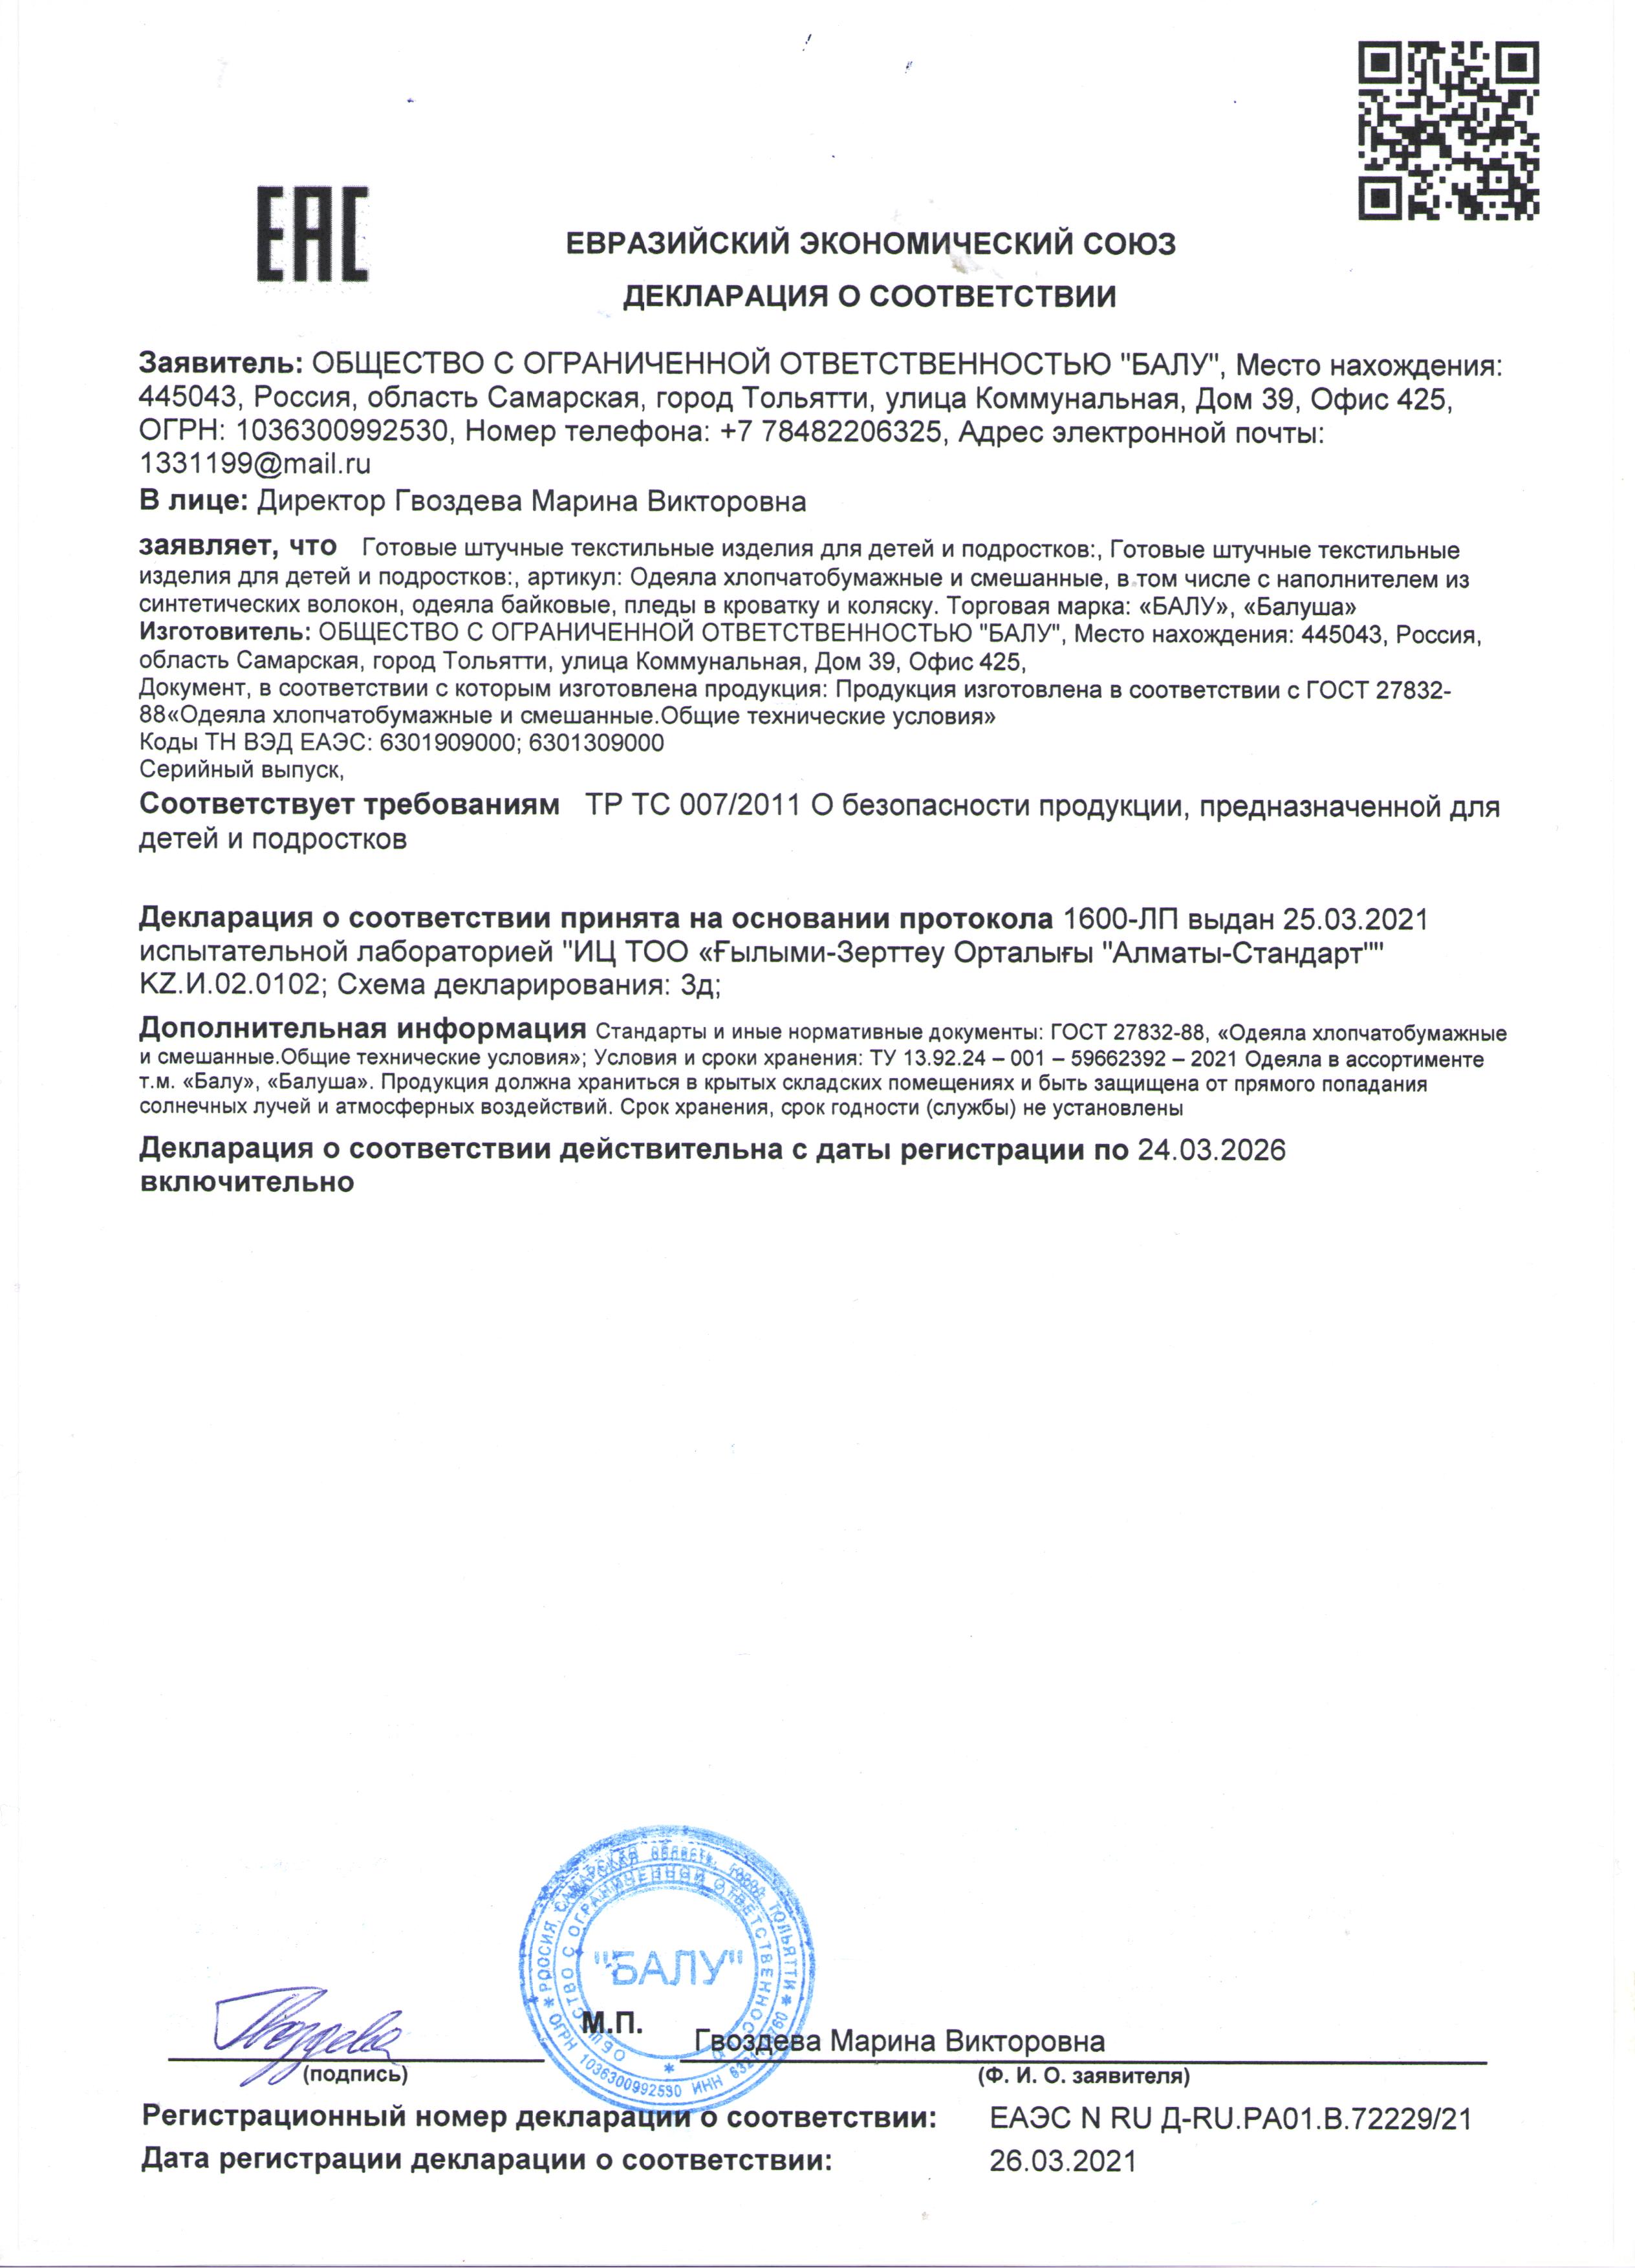 Декларация о соответсвии: Одеяла байковые до 24.03.2026